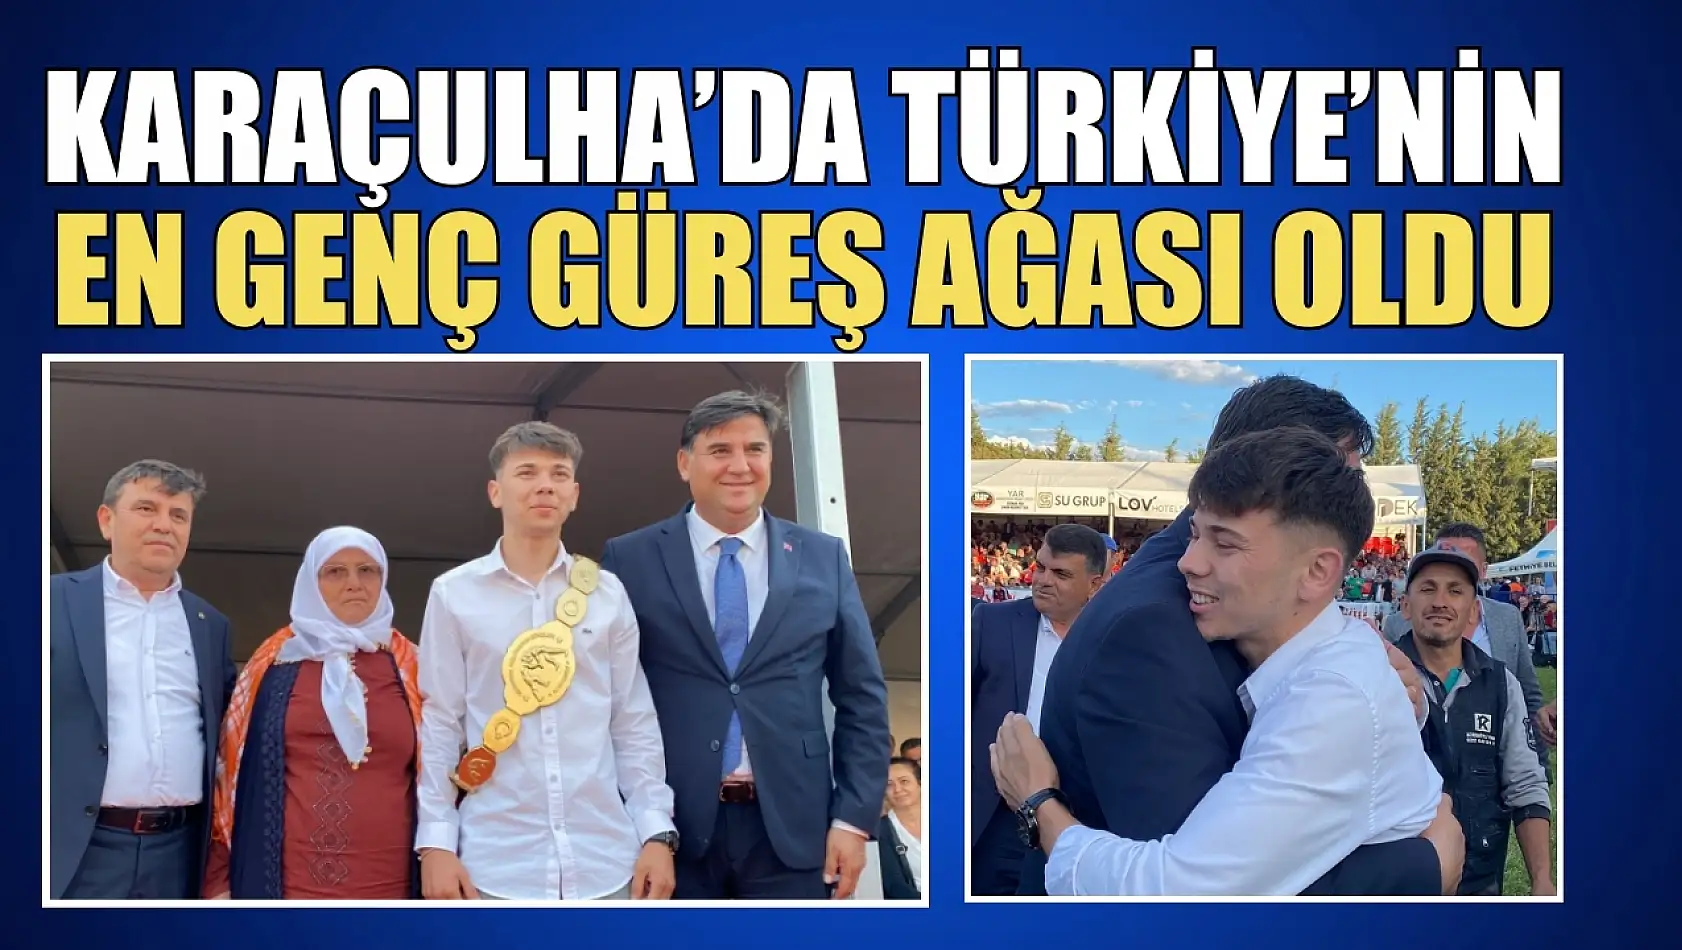 Karaçulha Mustafa Kiremitli 2.Yağlı Güreşleri'nde Türkiye'nin En Genç Güreş Ağası Oldu 